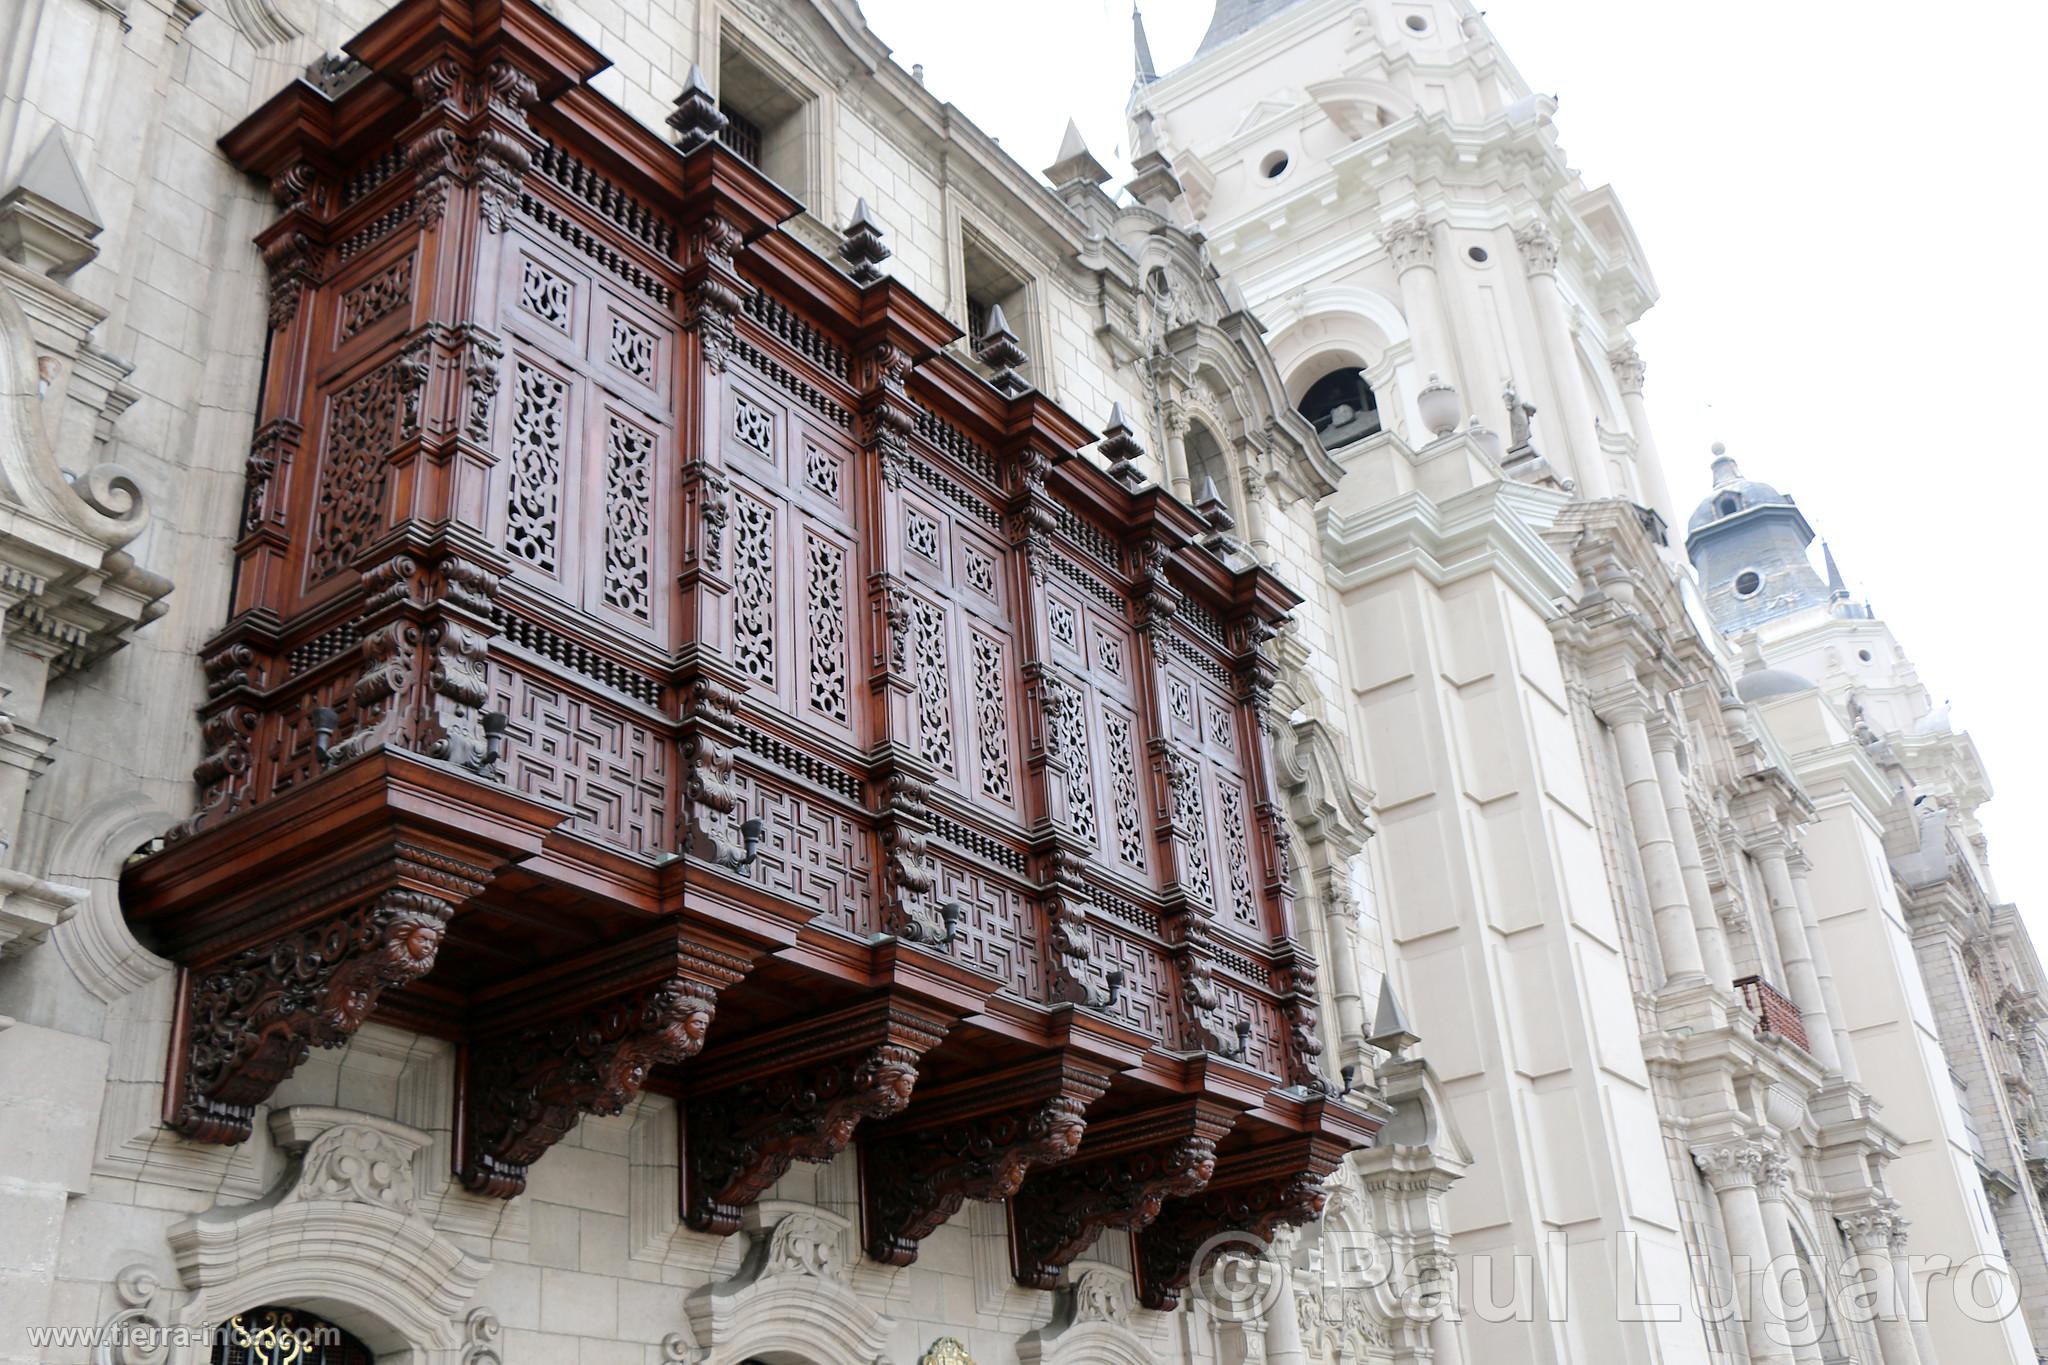 Balcones de la catedral, Lima